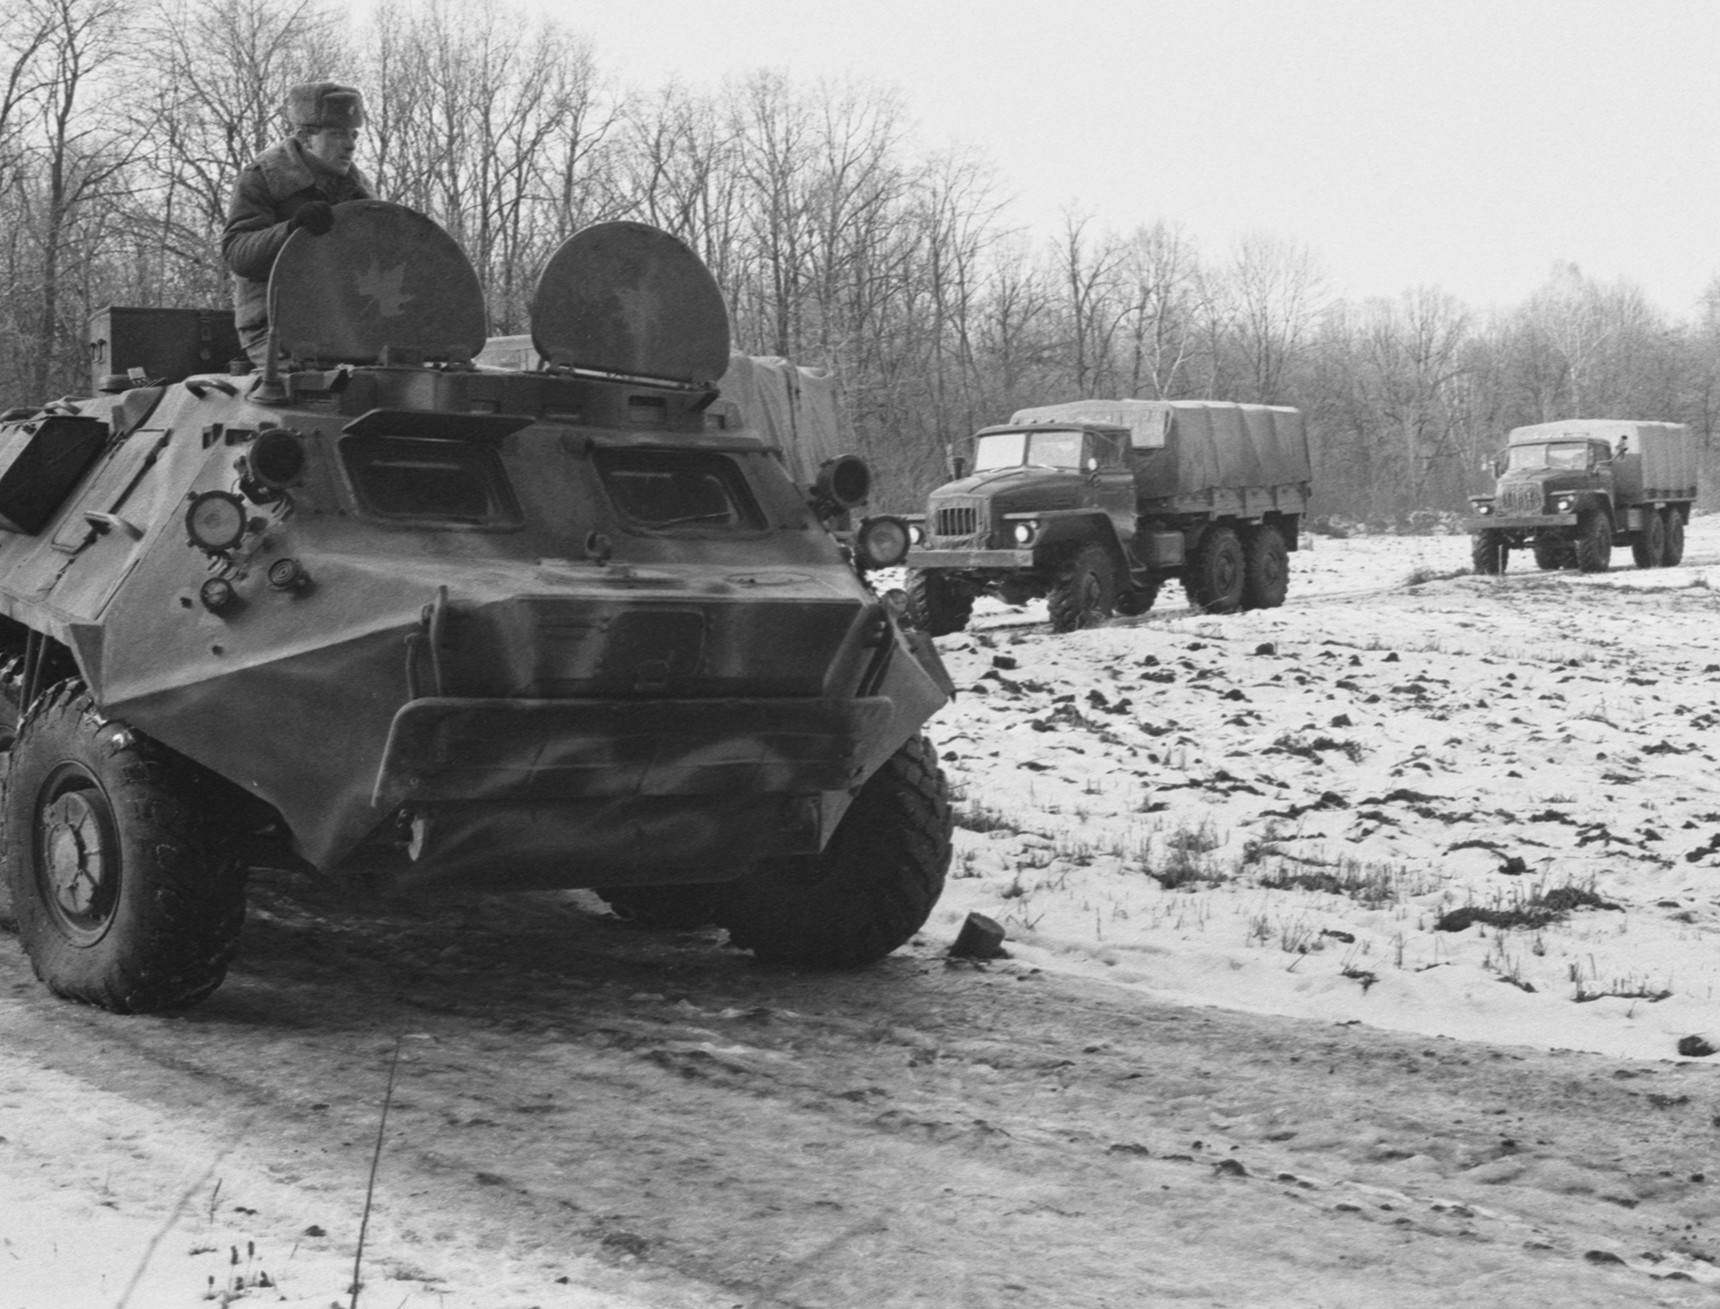 Ukrajinska vojska prema sporazumu predaje bojeve glave, 4. siječnja 1992.

